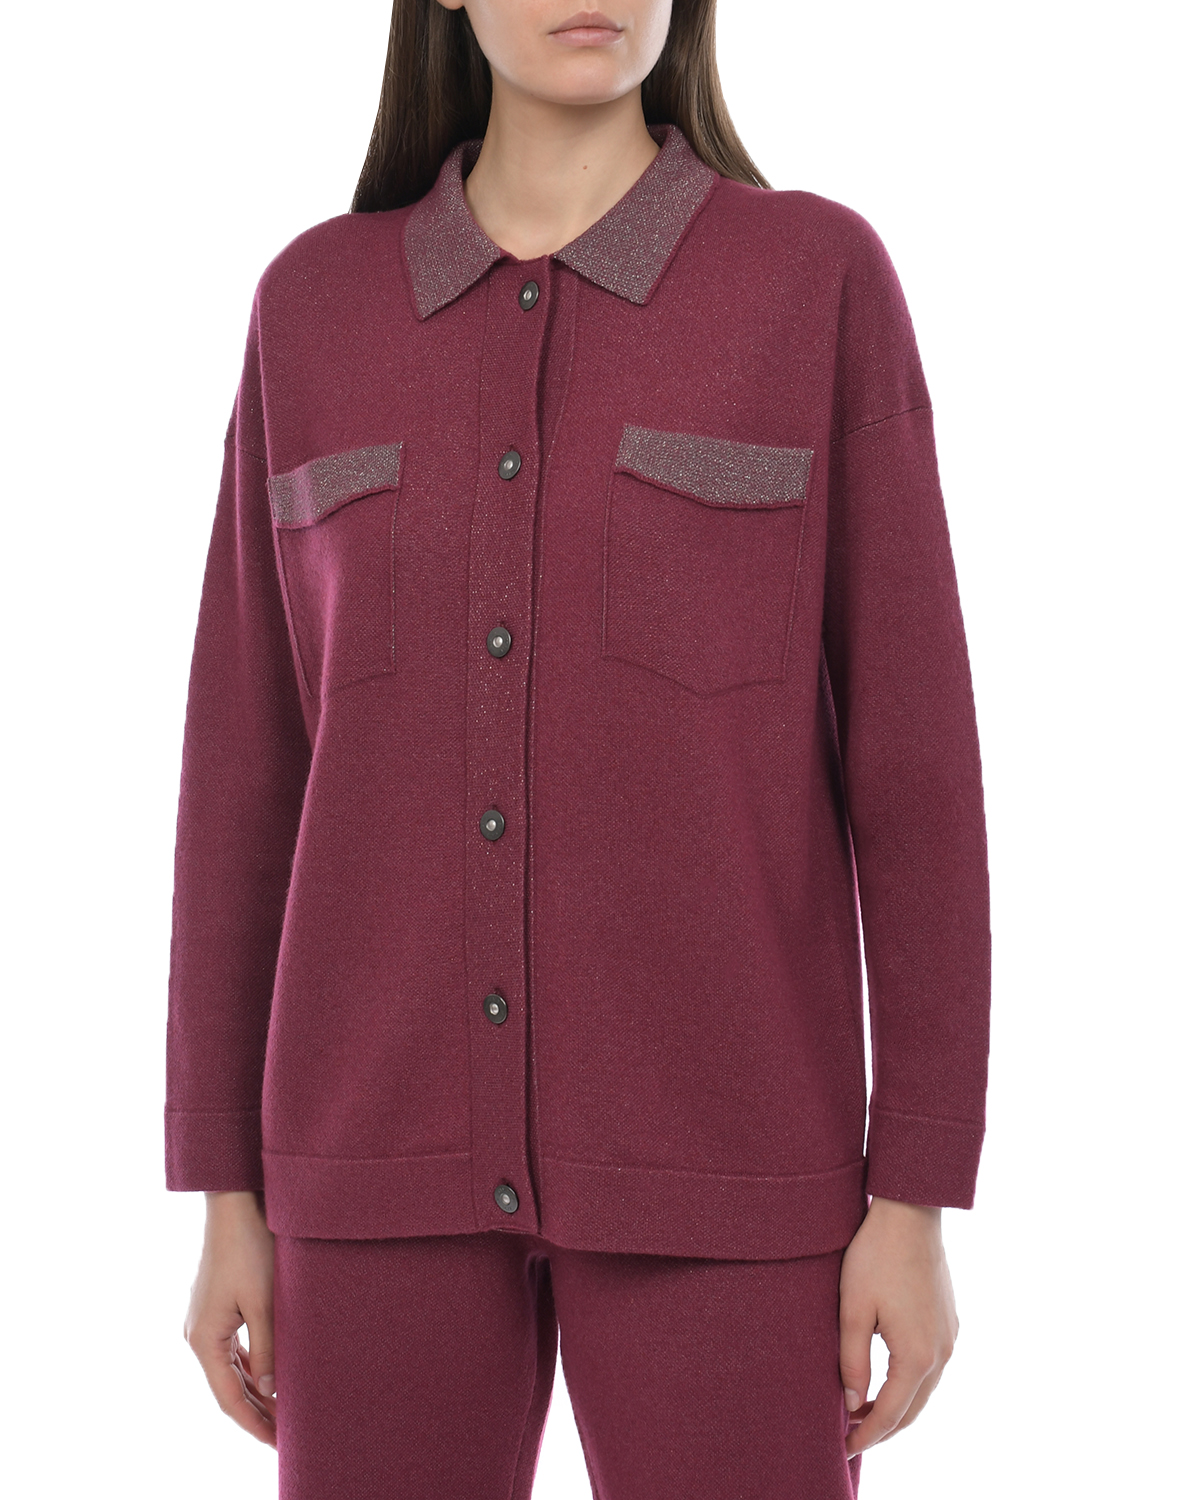 Бордовая рубашка из шерсти и шелка Panicale, размер 44, цвет бордовый - фото 6